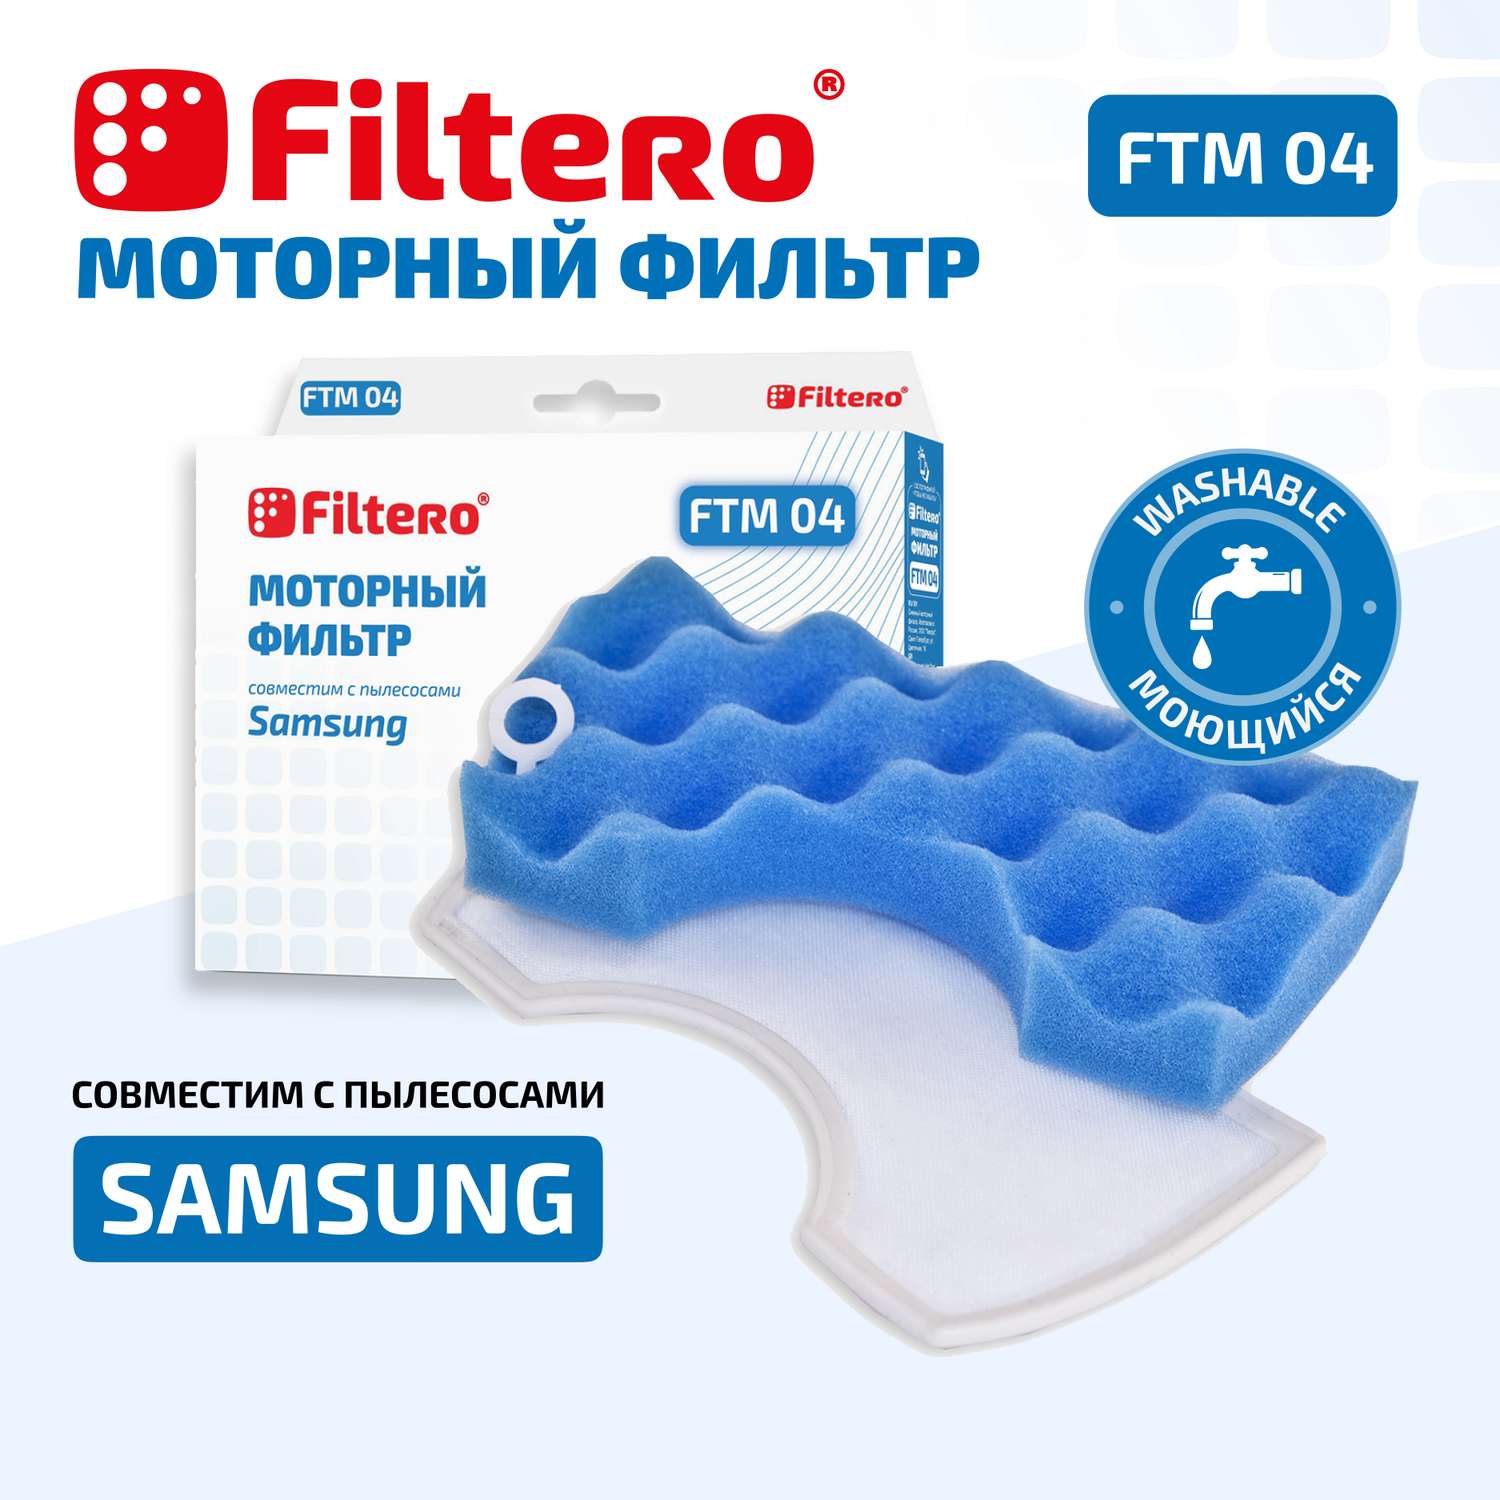 Фильтр моторный Filtero FTM 04 SAM для пылесосов Samsung - фото 2